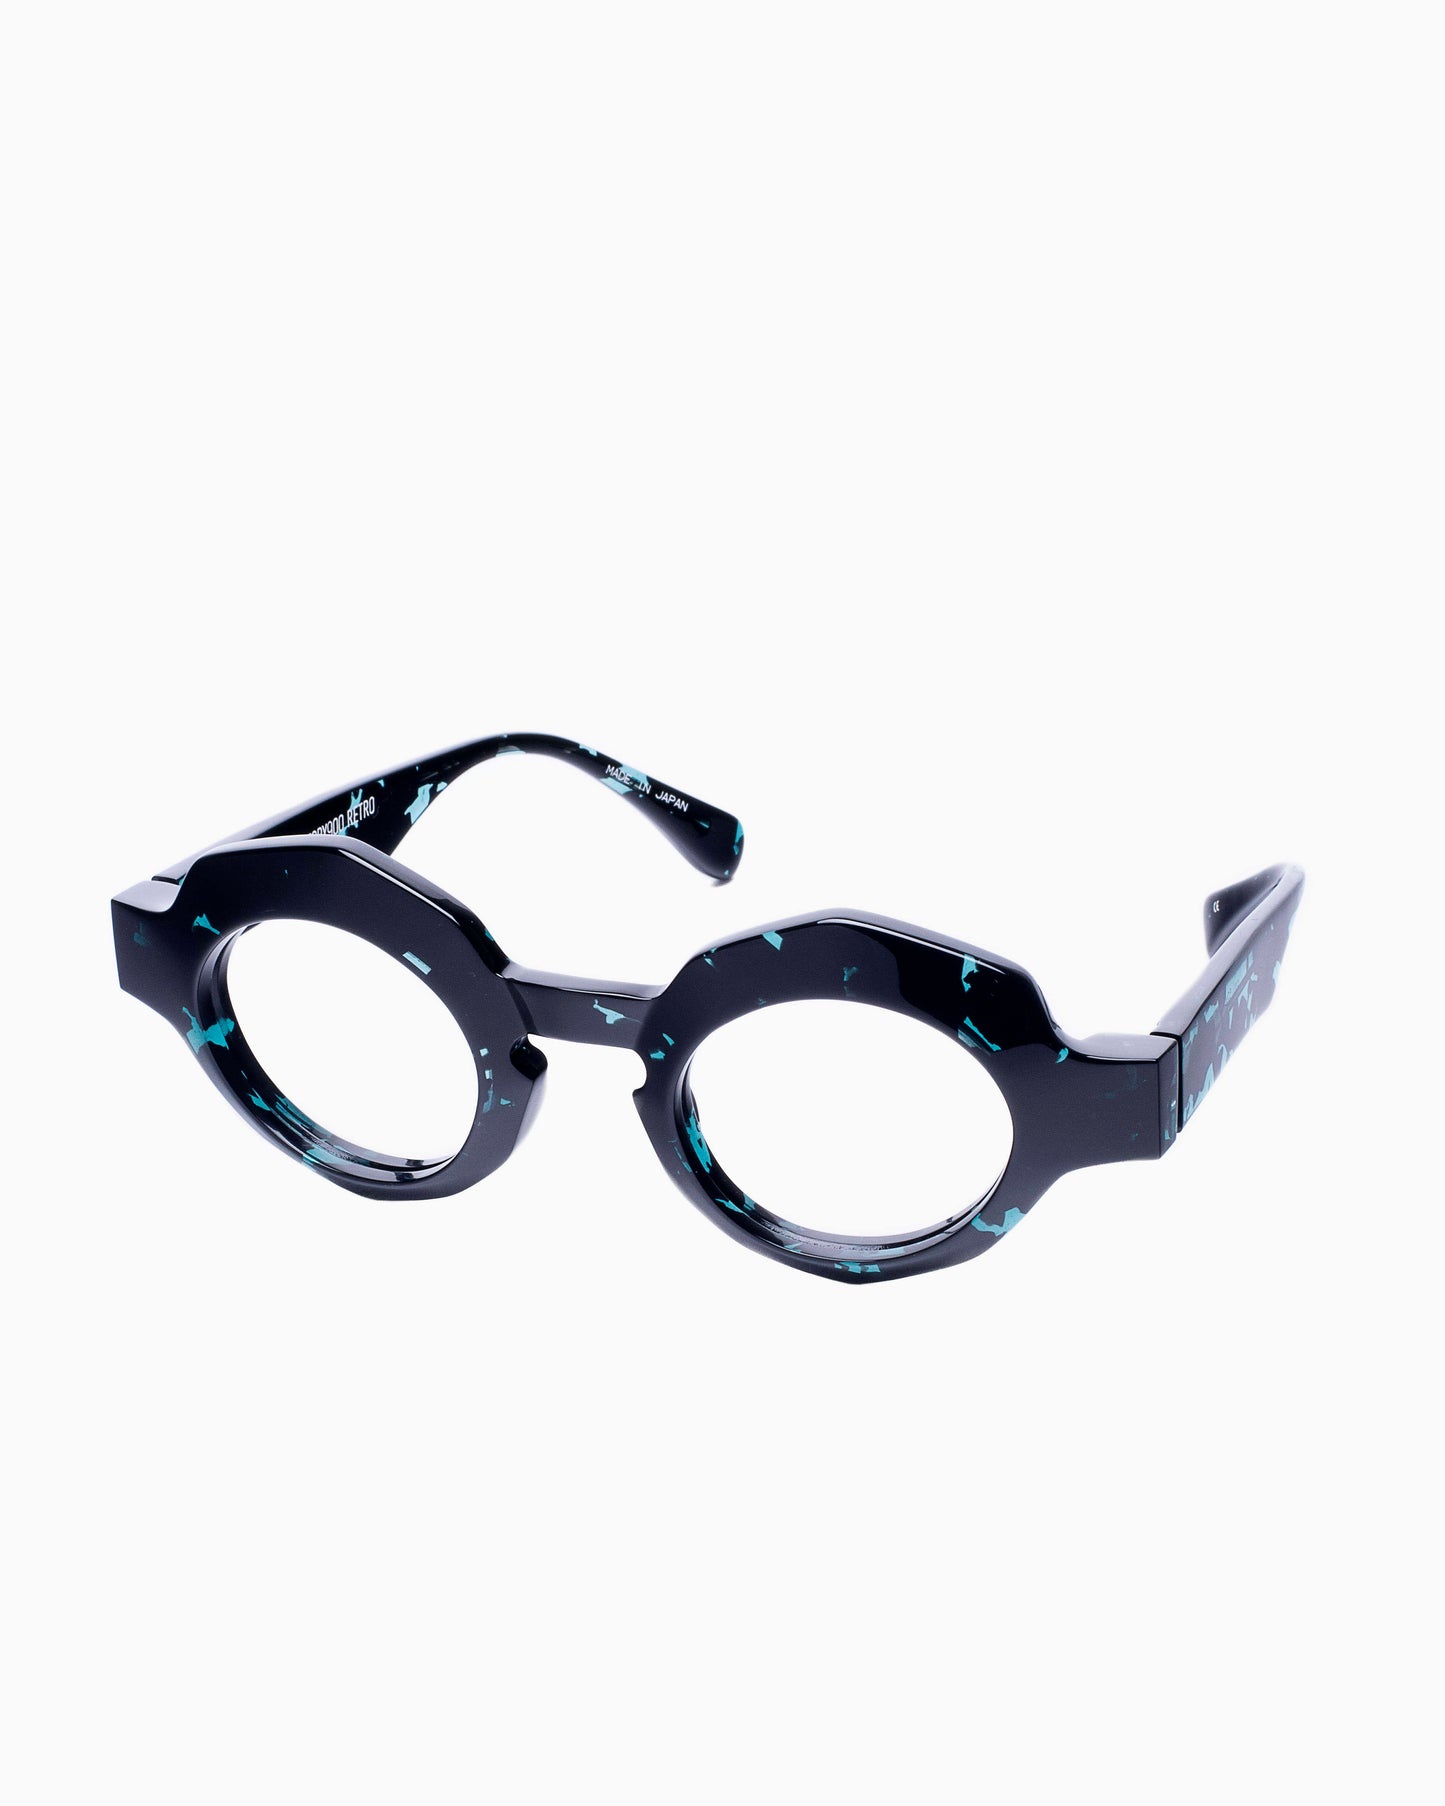 Factory 900 - RF026 - 524 | glasses bar